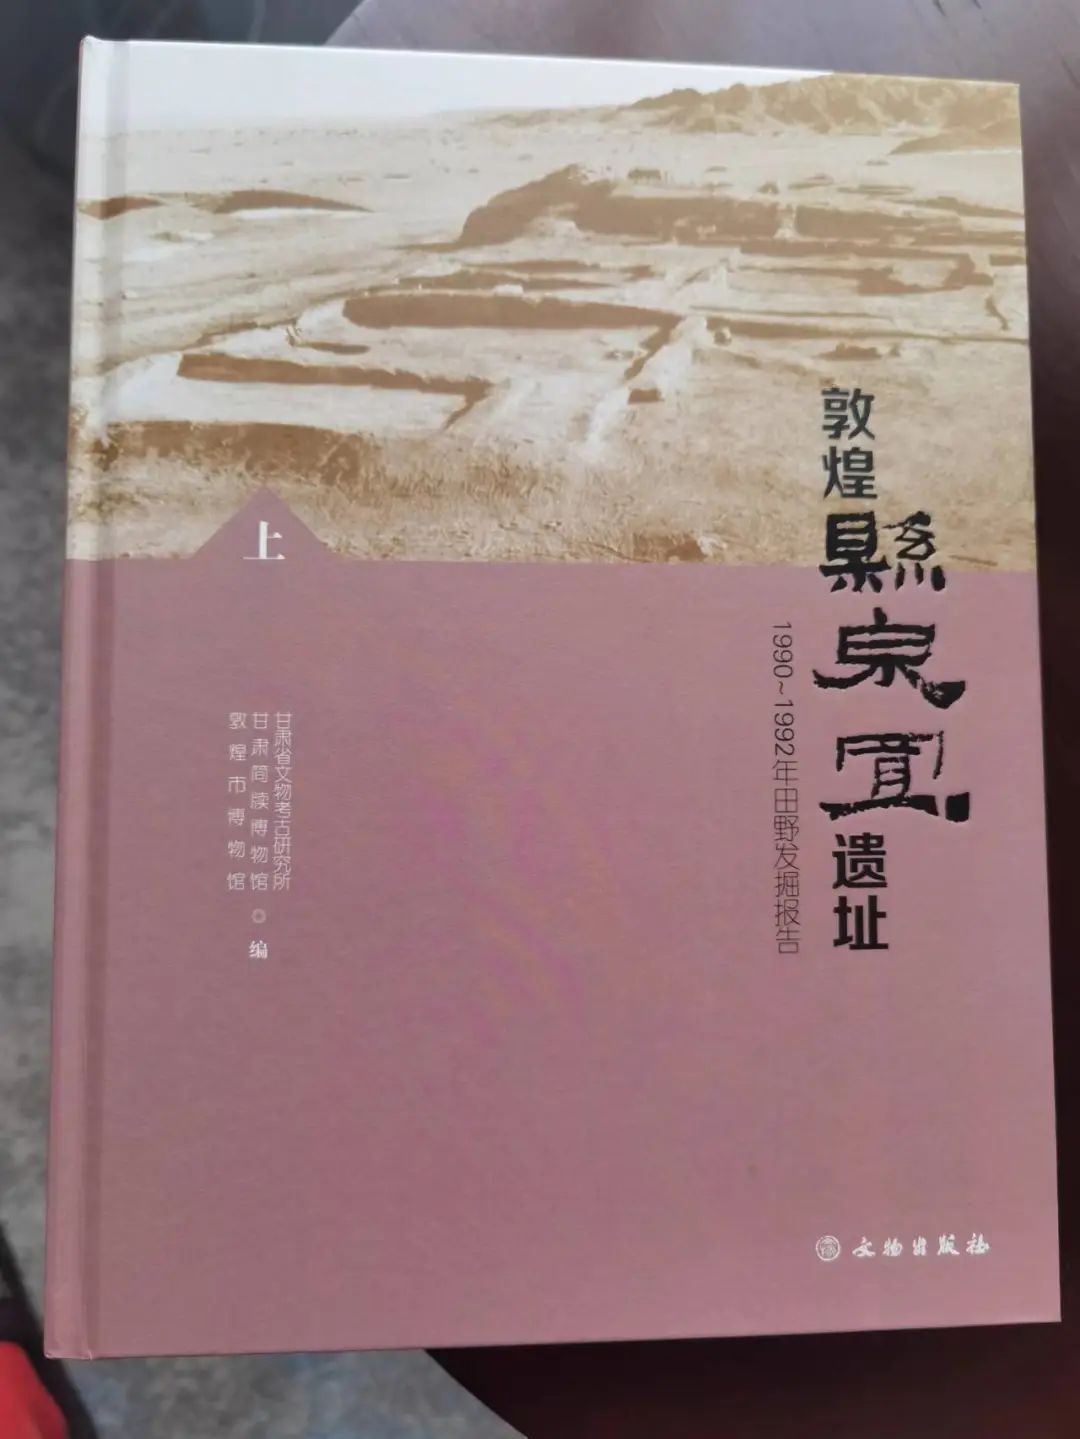 甘肃敦煌《悬泉置遗址考古报告》正式出版发行